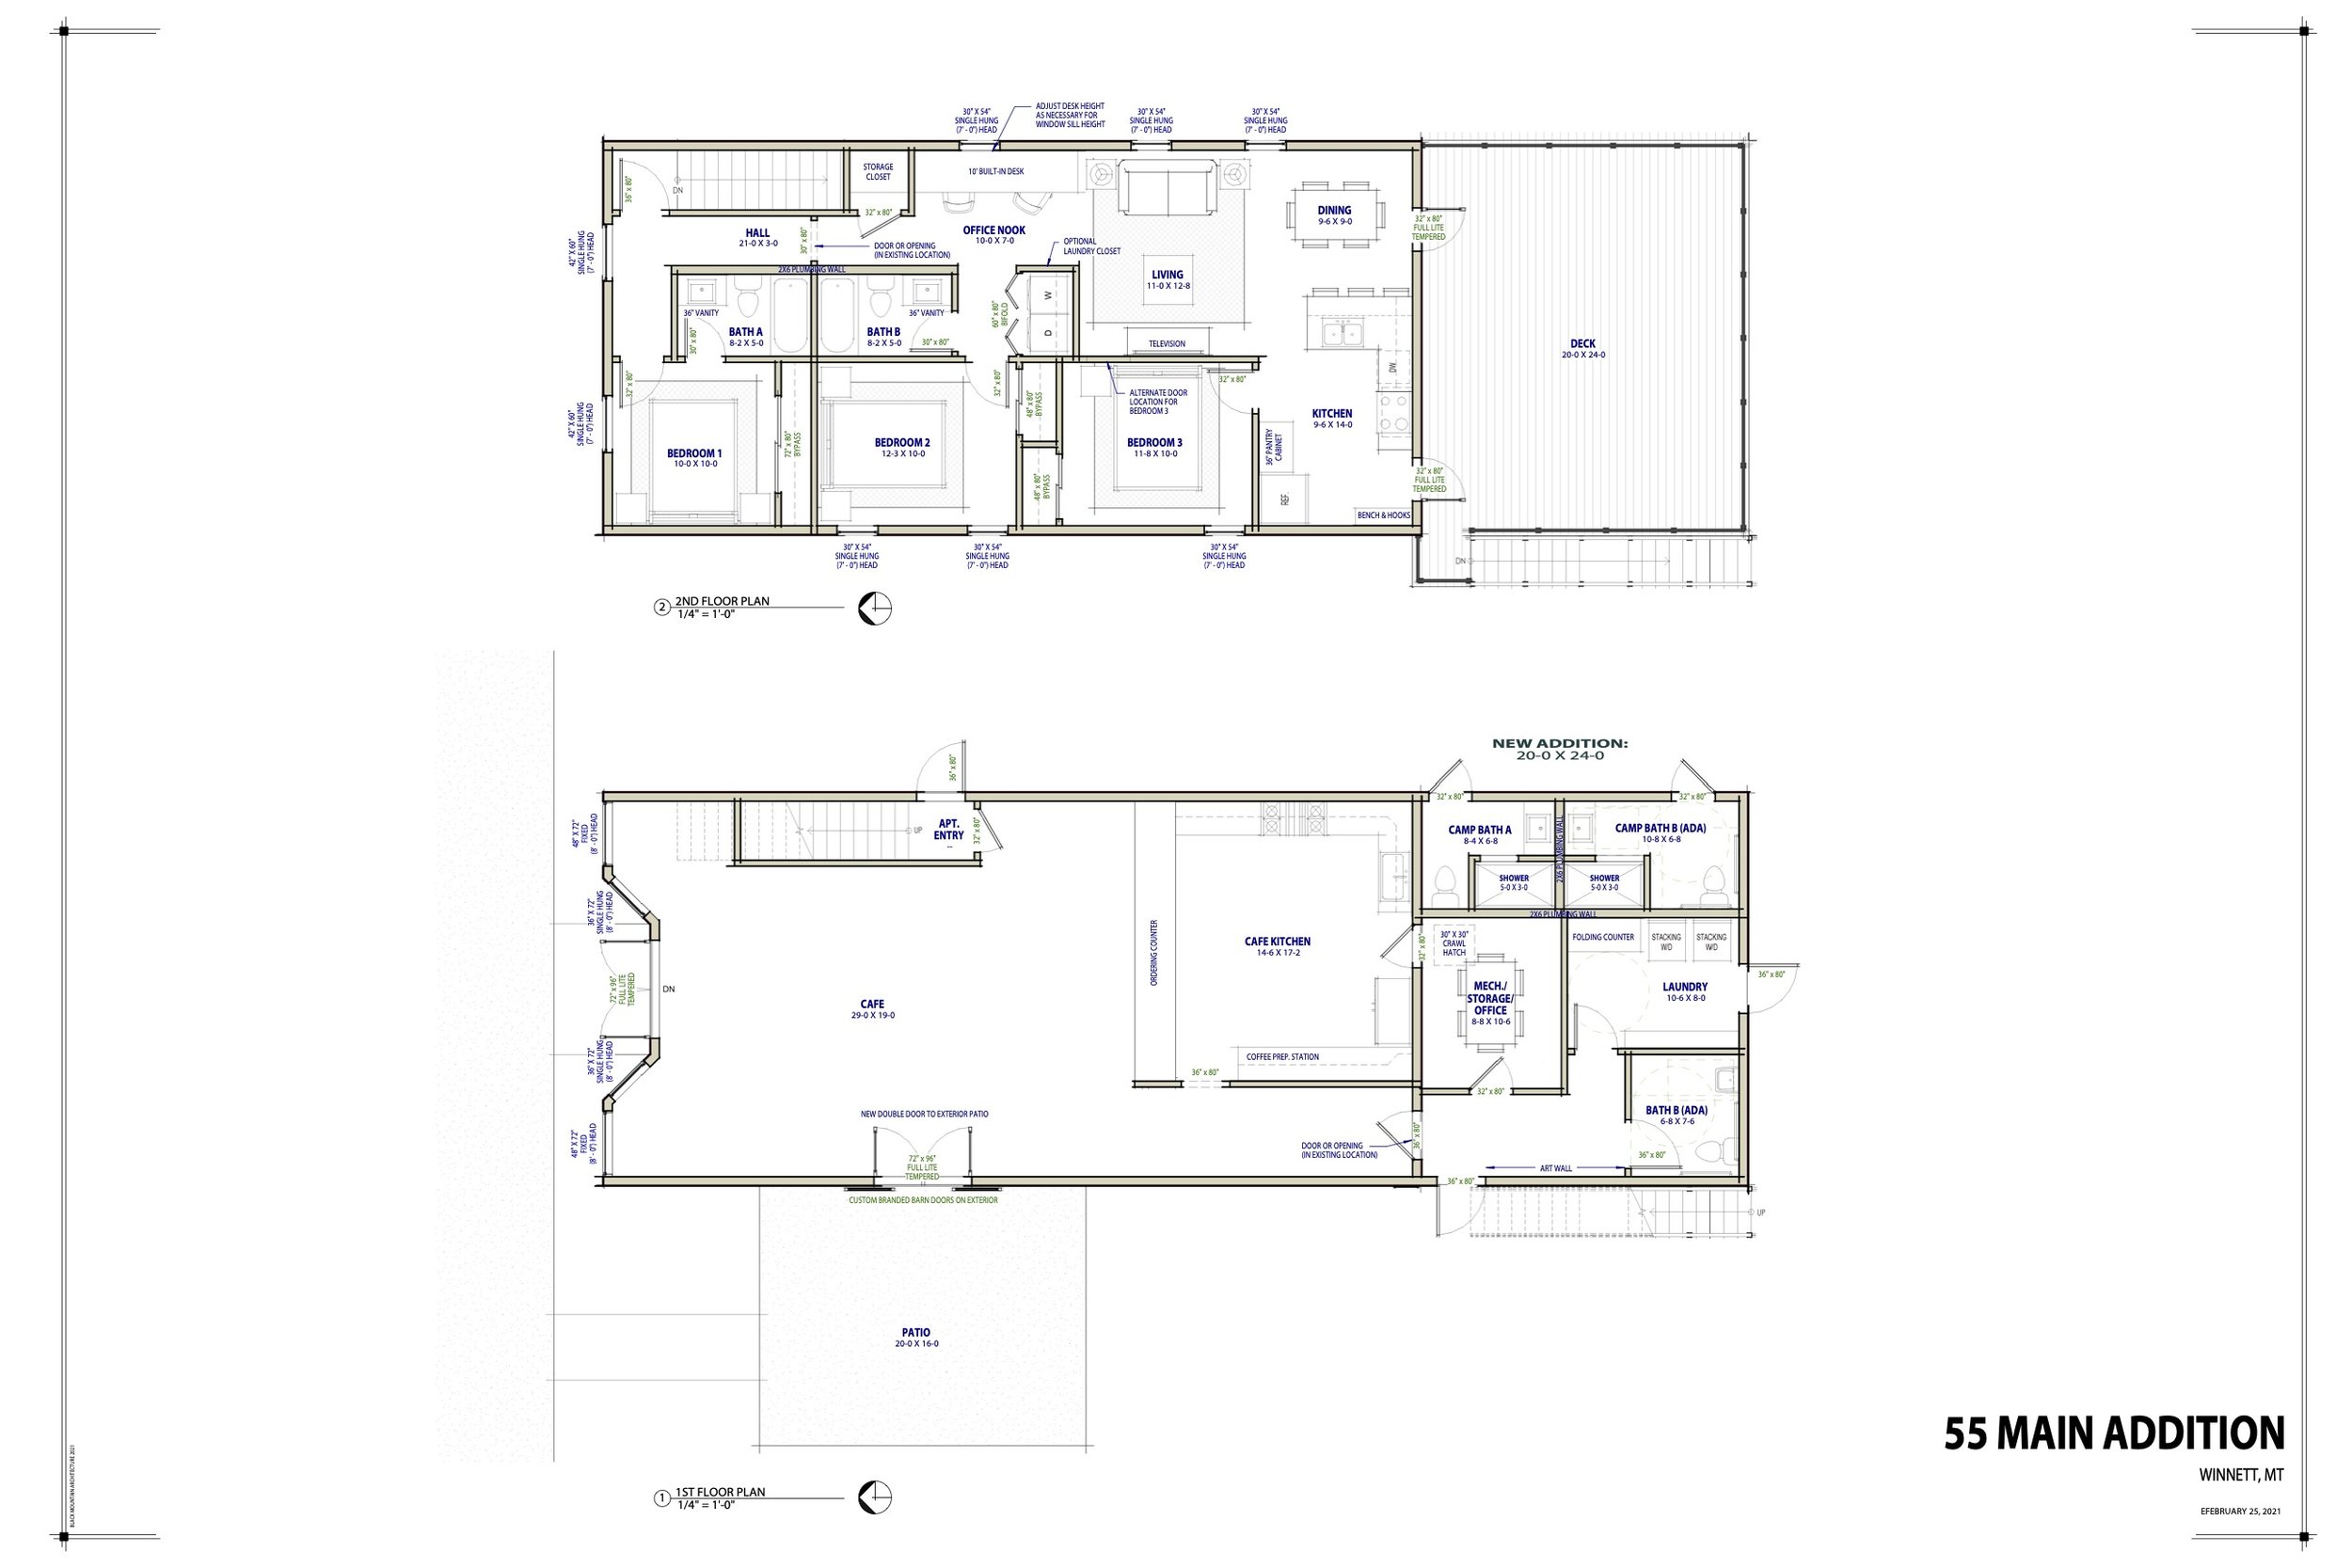 022523 55 Main Addition - Floor Plans & Elevations (2).jpg